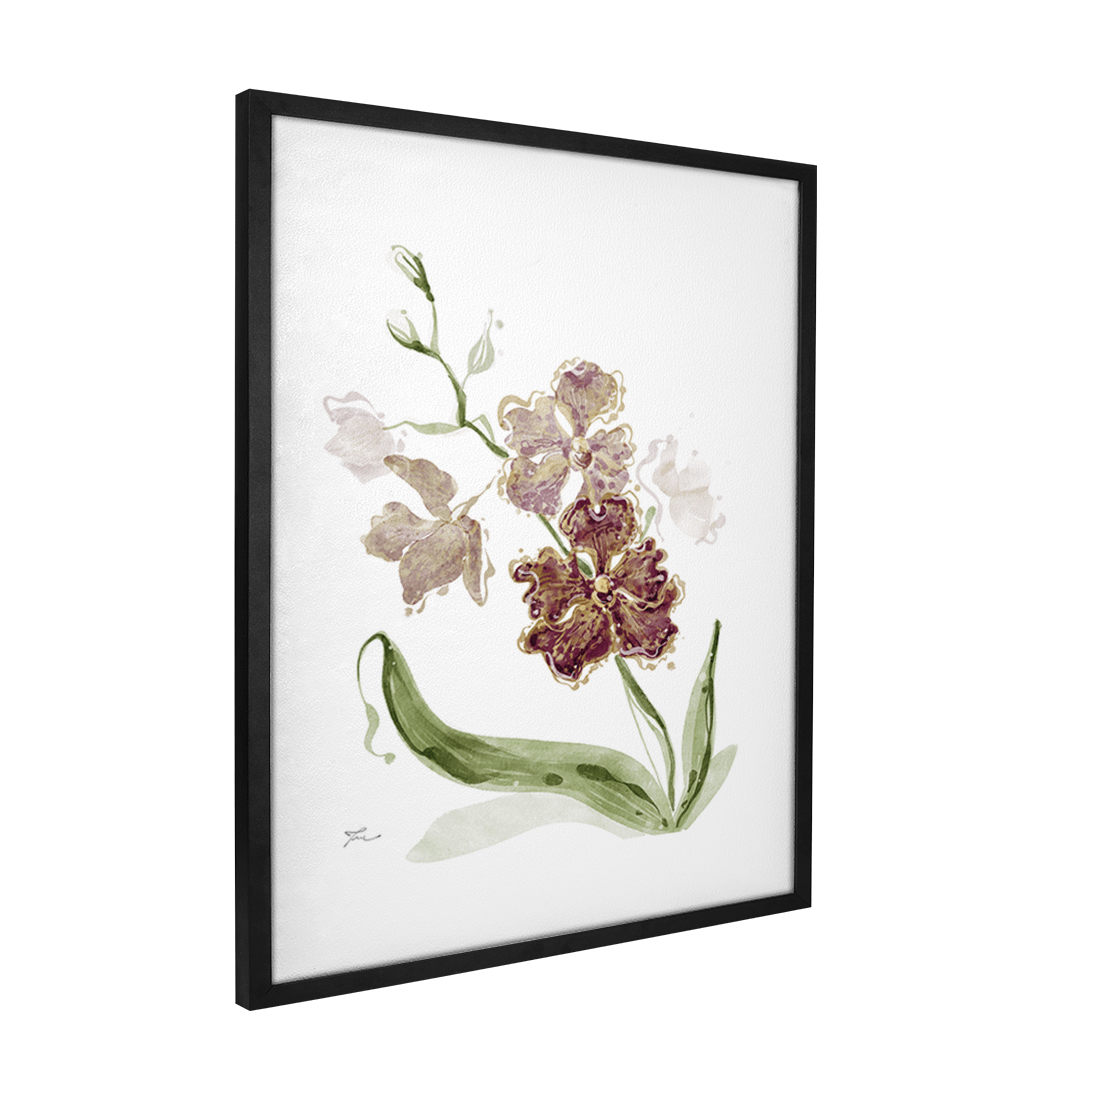 Quadro Decorativo Orquídea Vermelha | Thaís Mota